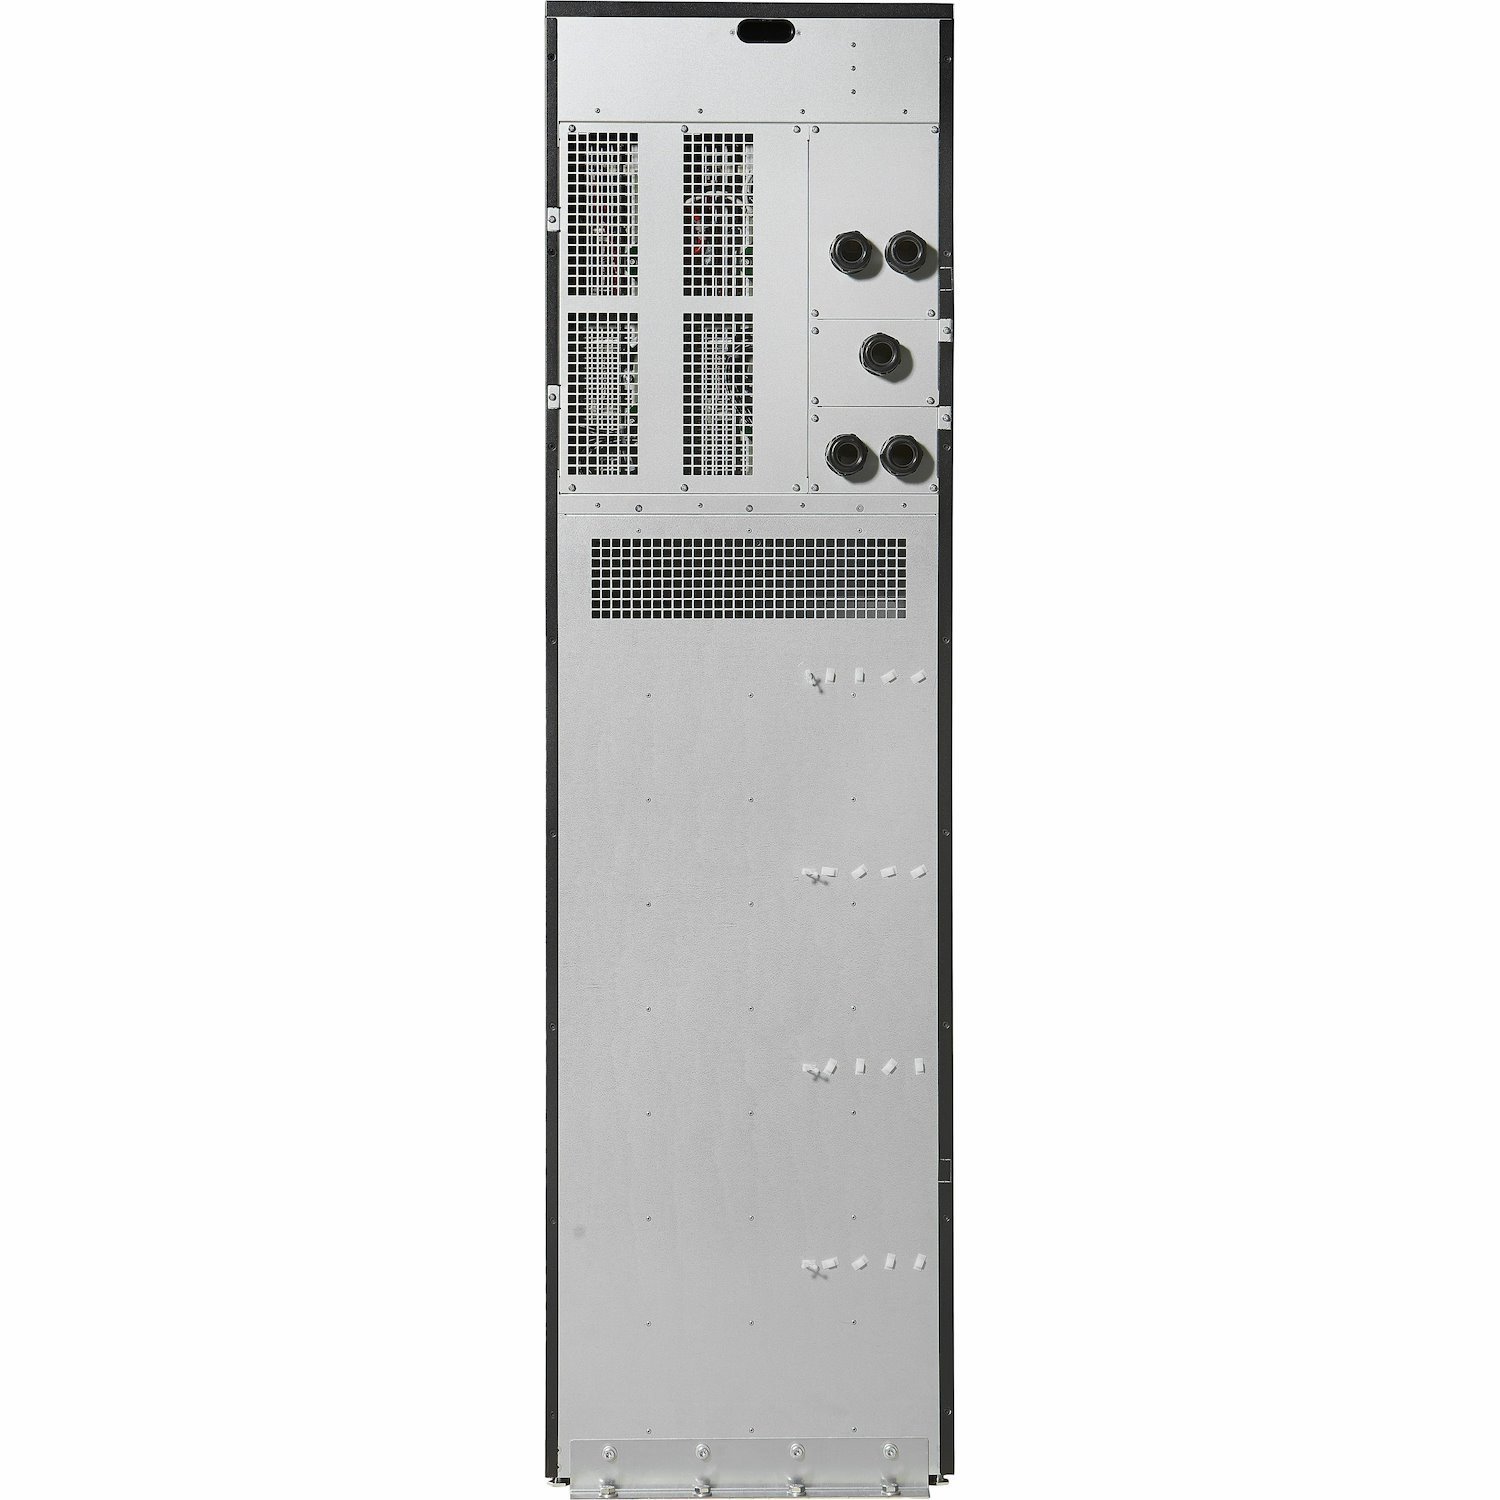 Eaton 93PS30U0 30kVA Modular UPS